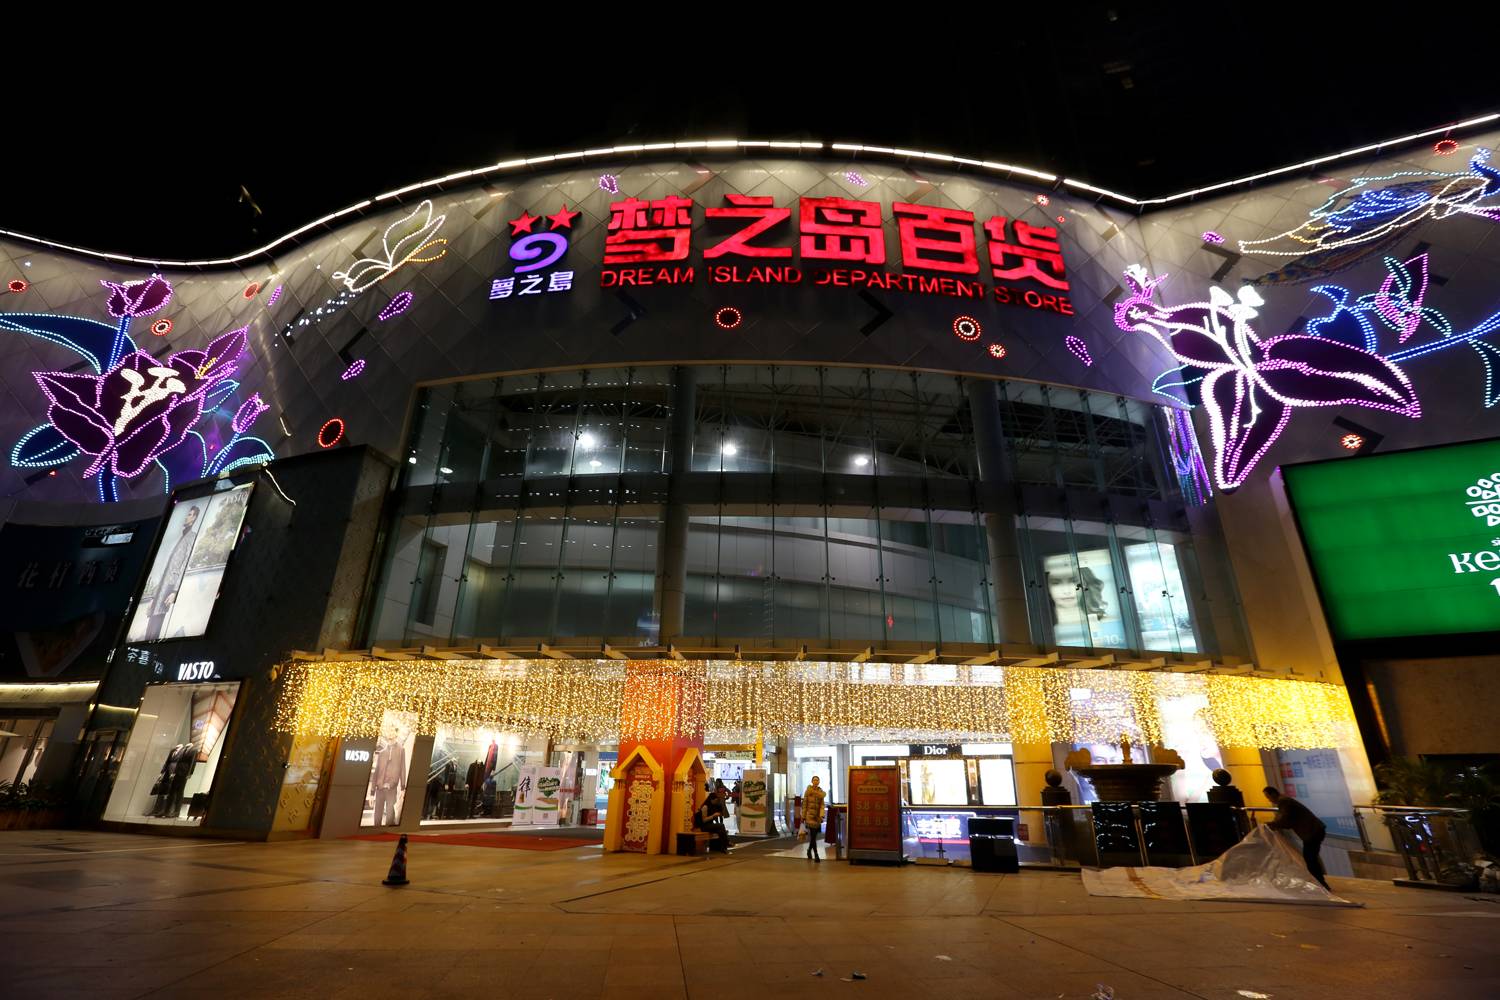 知识库 正文  梦之岛水晶城百货于2006年10月29日开业,由广西著名商业